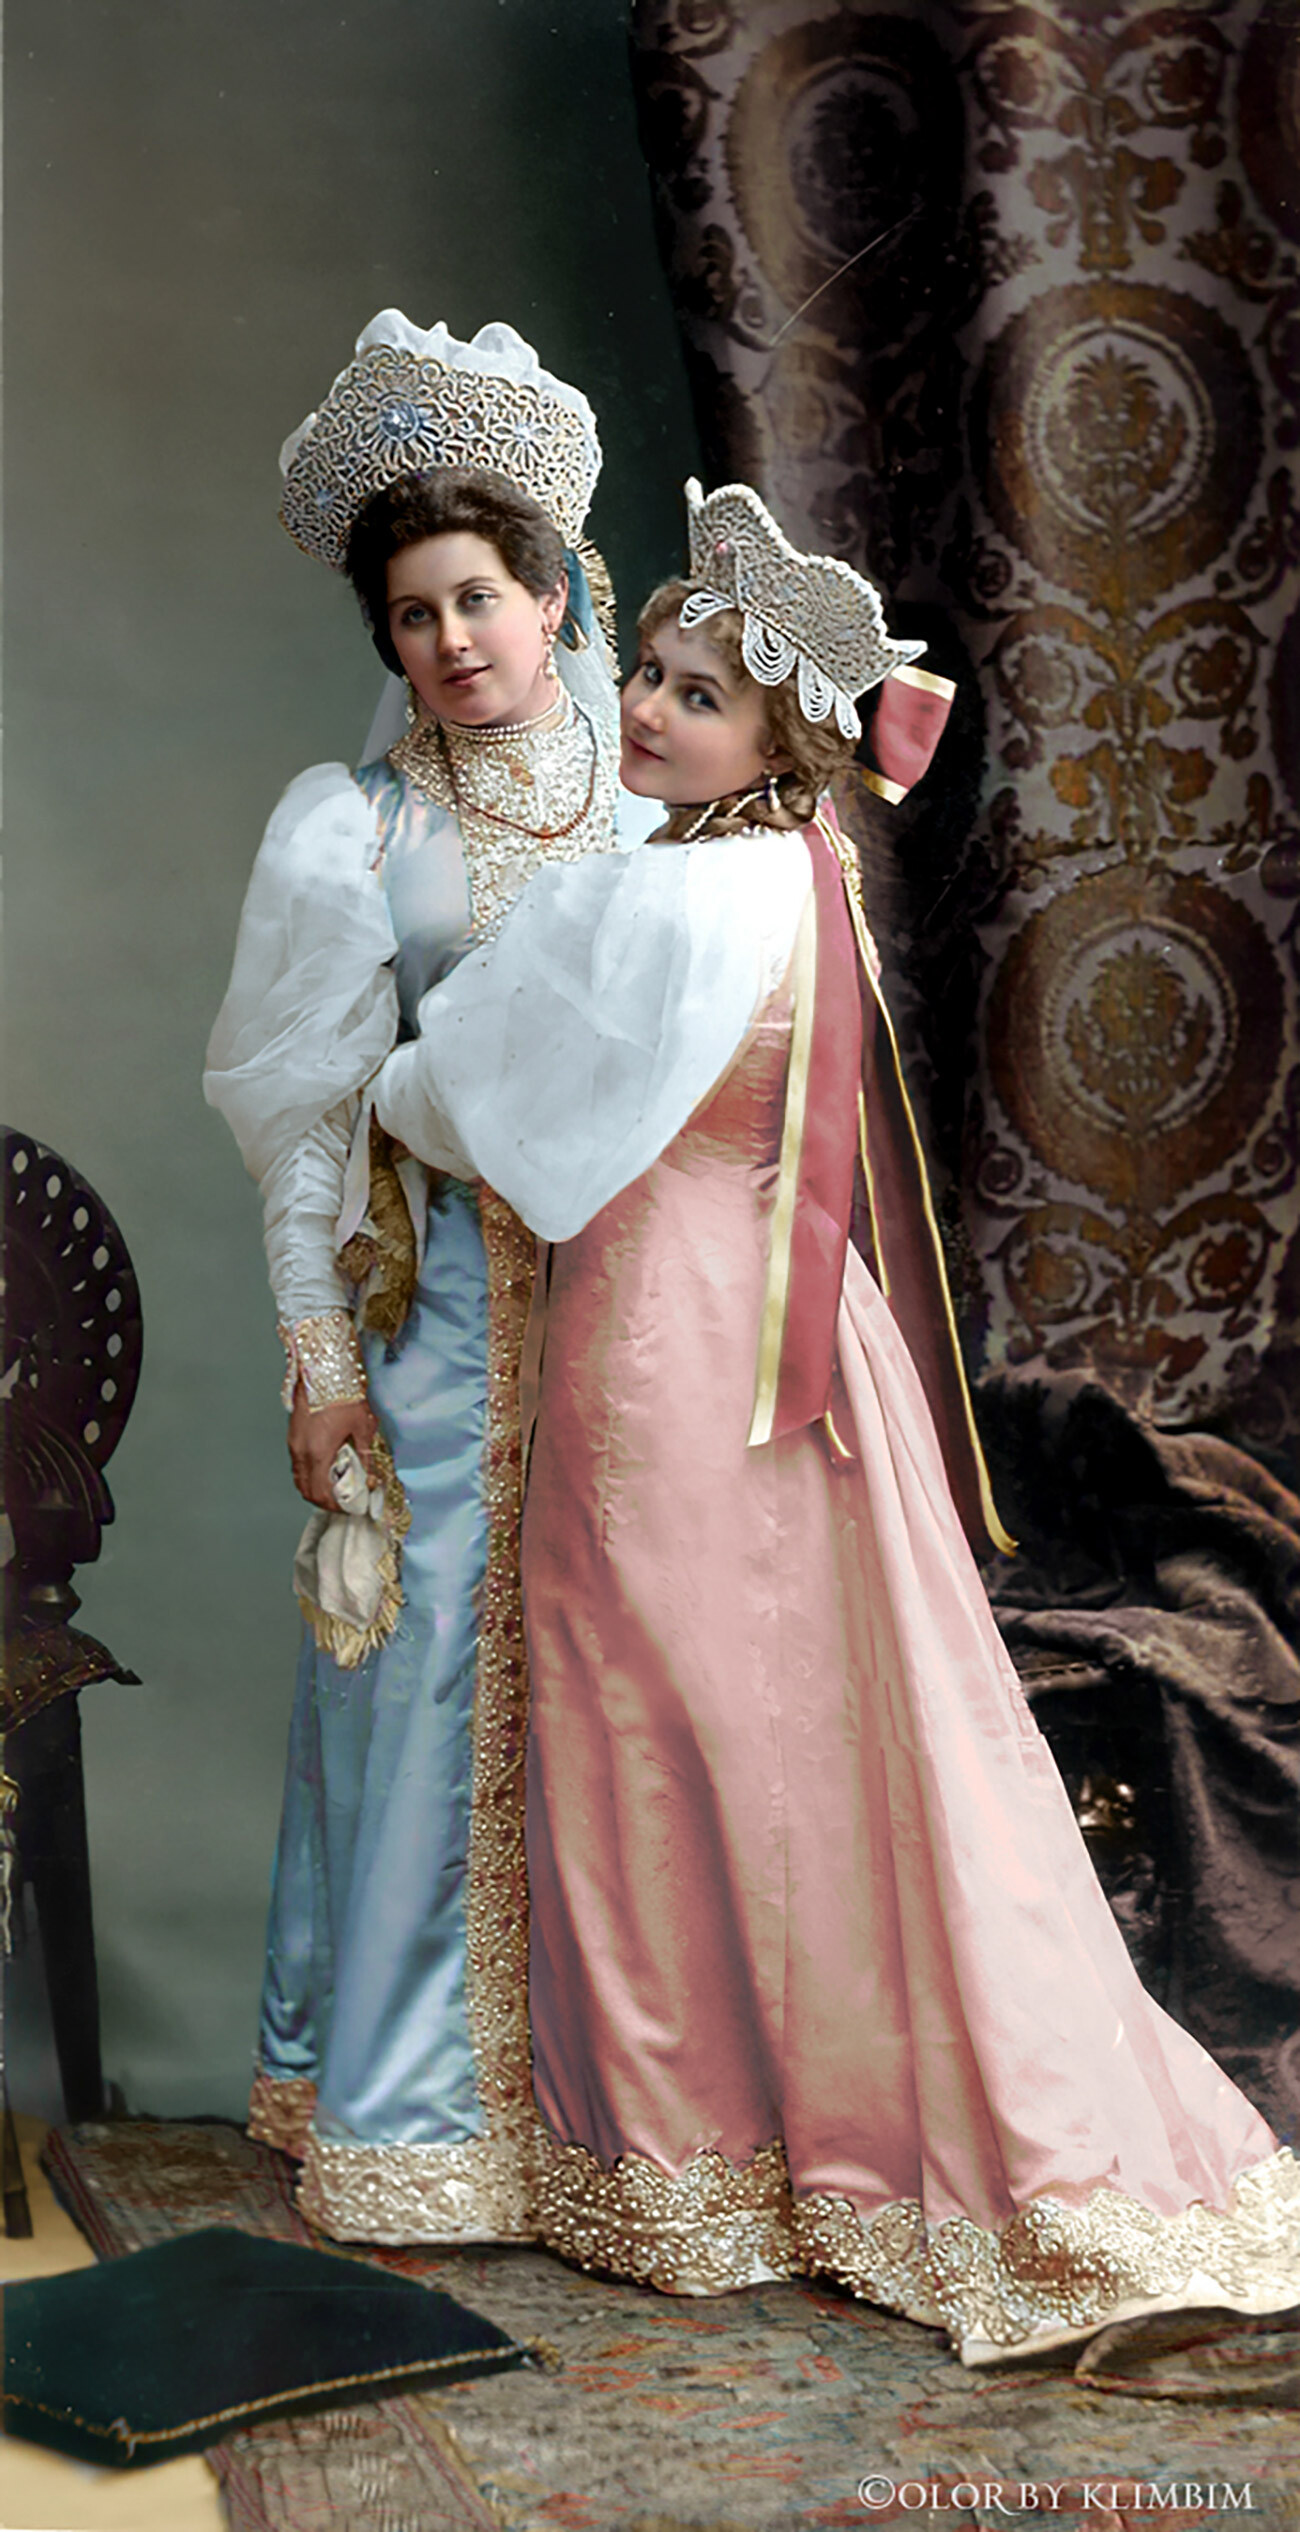 皇后付き女官のアンナ・タニェエワとその姉妹 